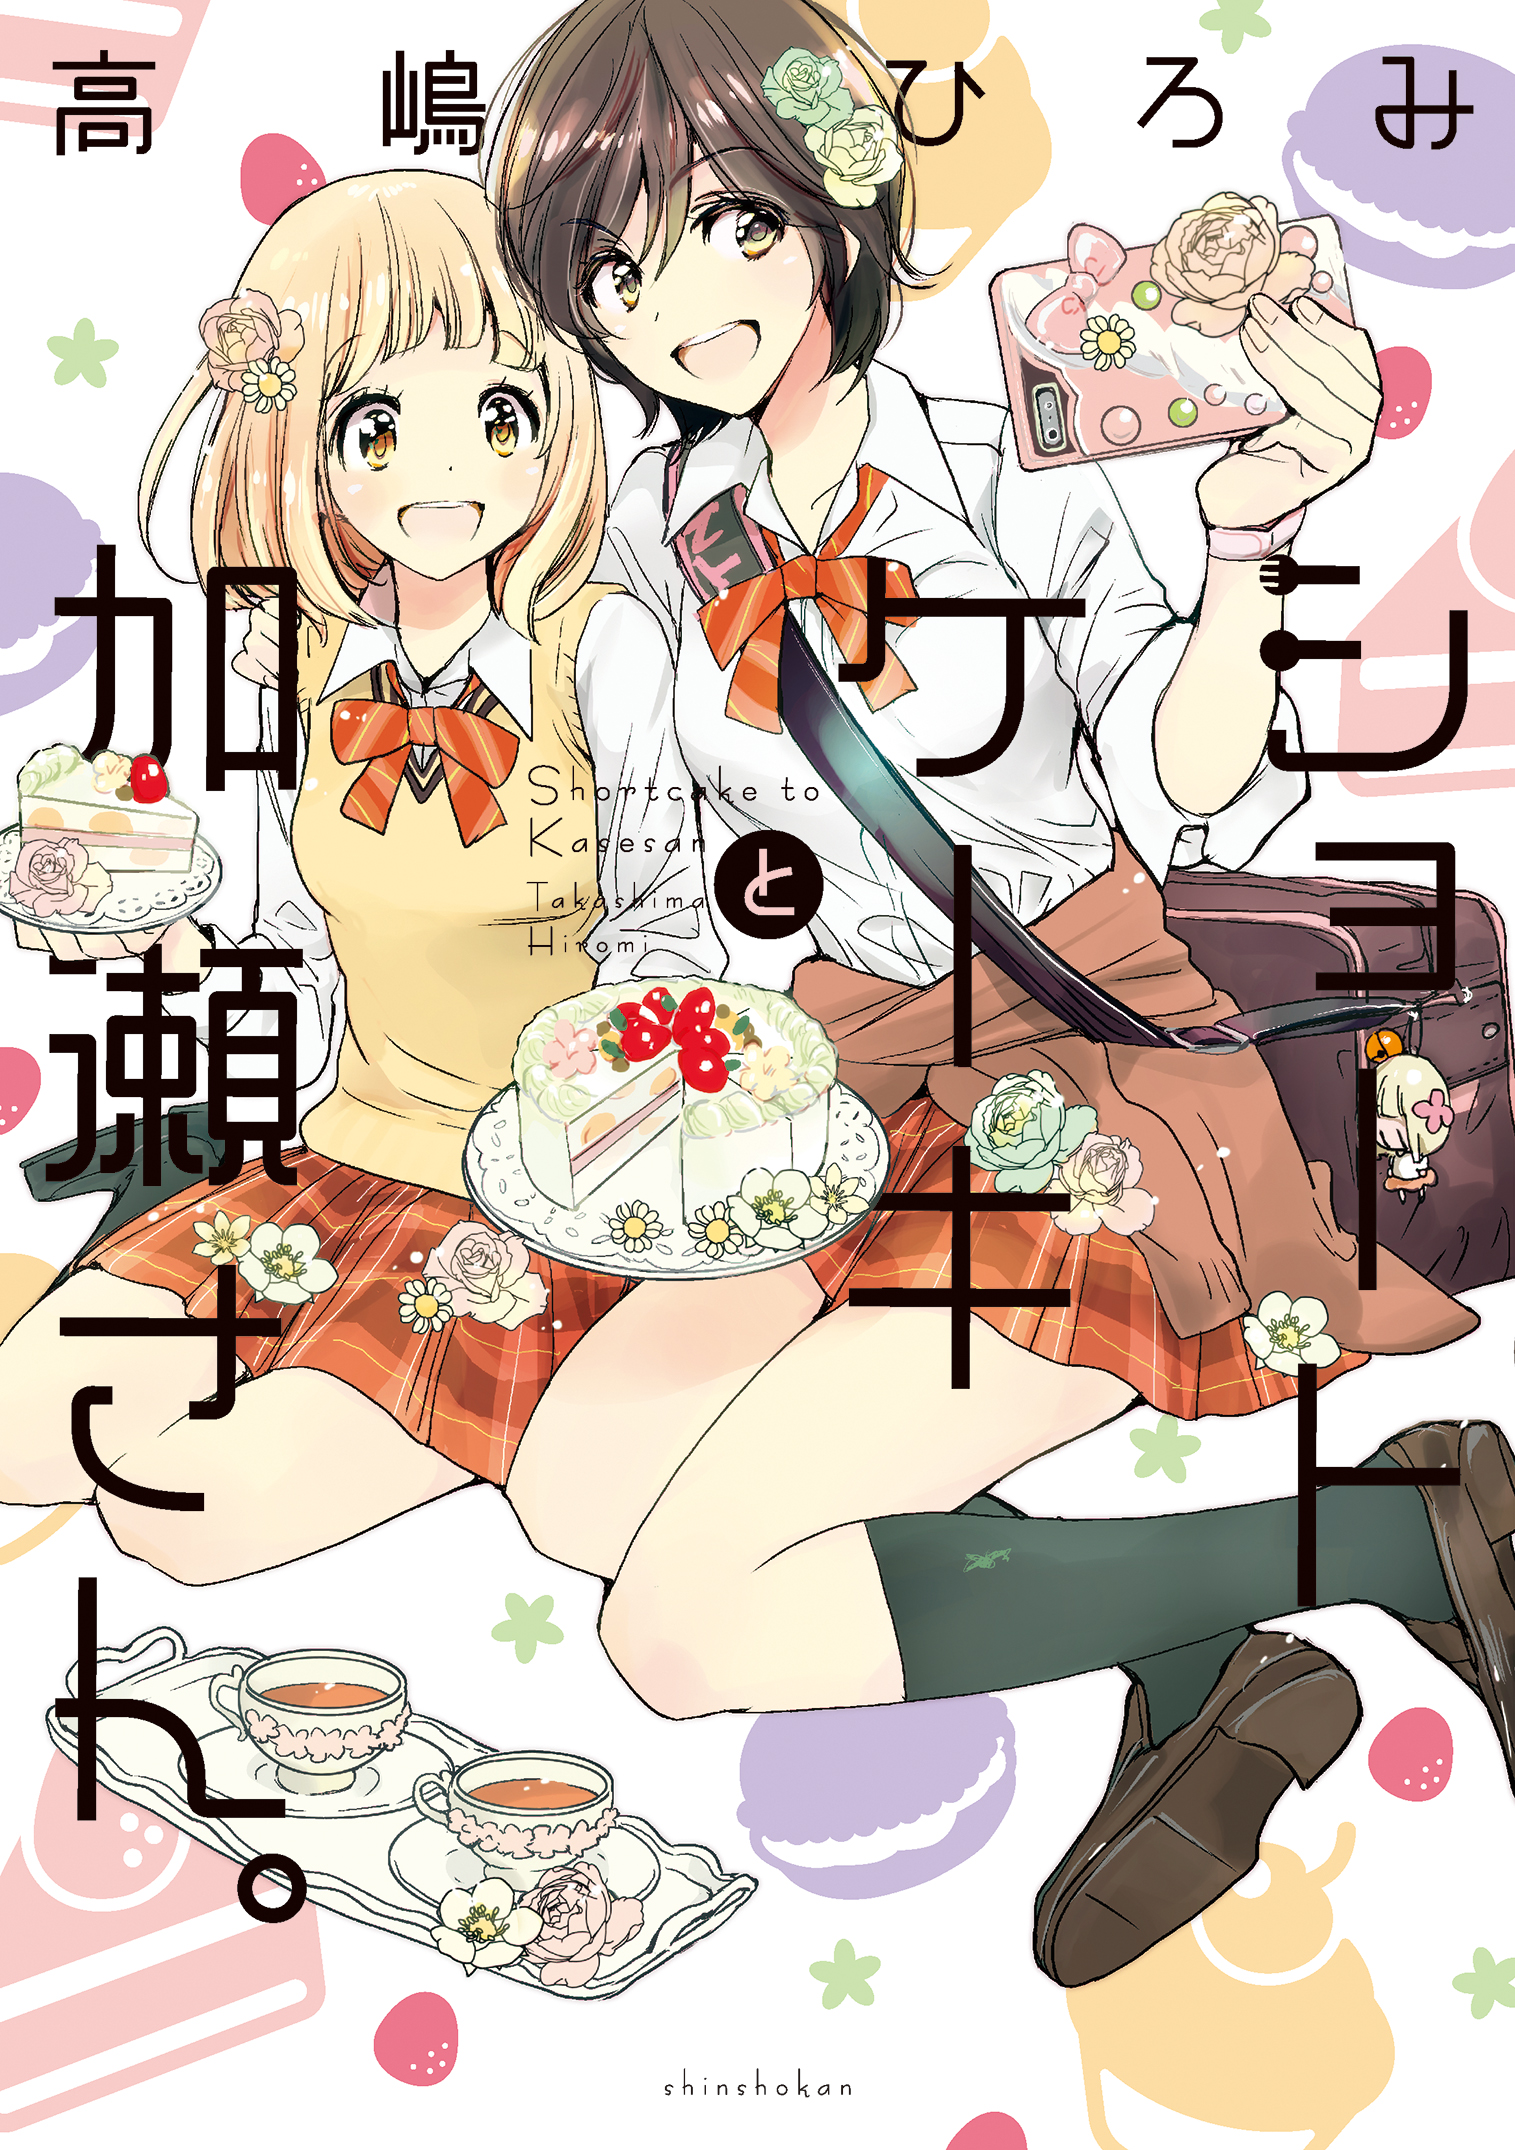 ショートケーキと加瀬さん。(マンガ) - 電子書籍 | U-NEXT 初回600円分無料